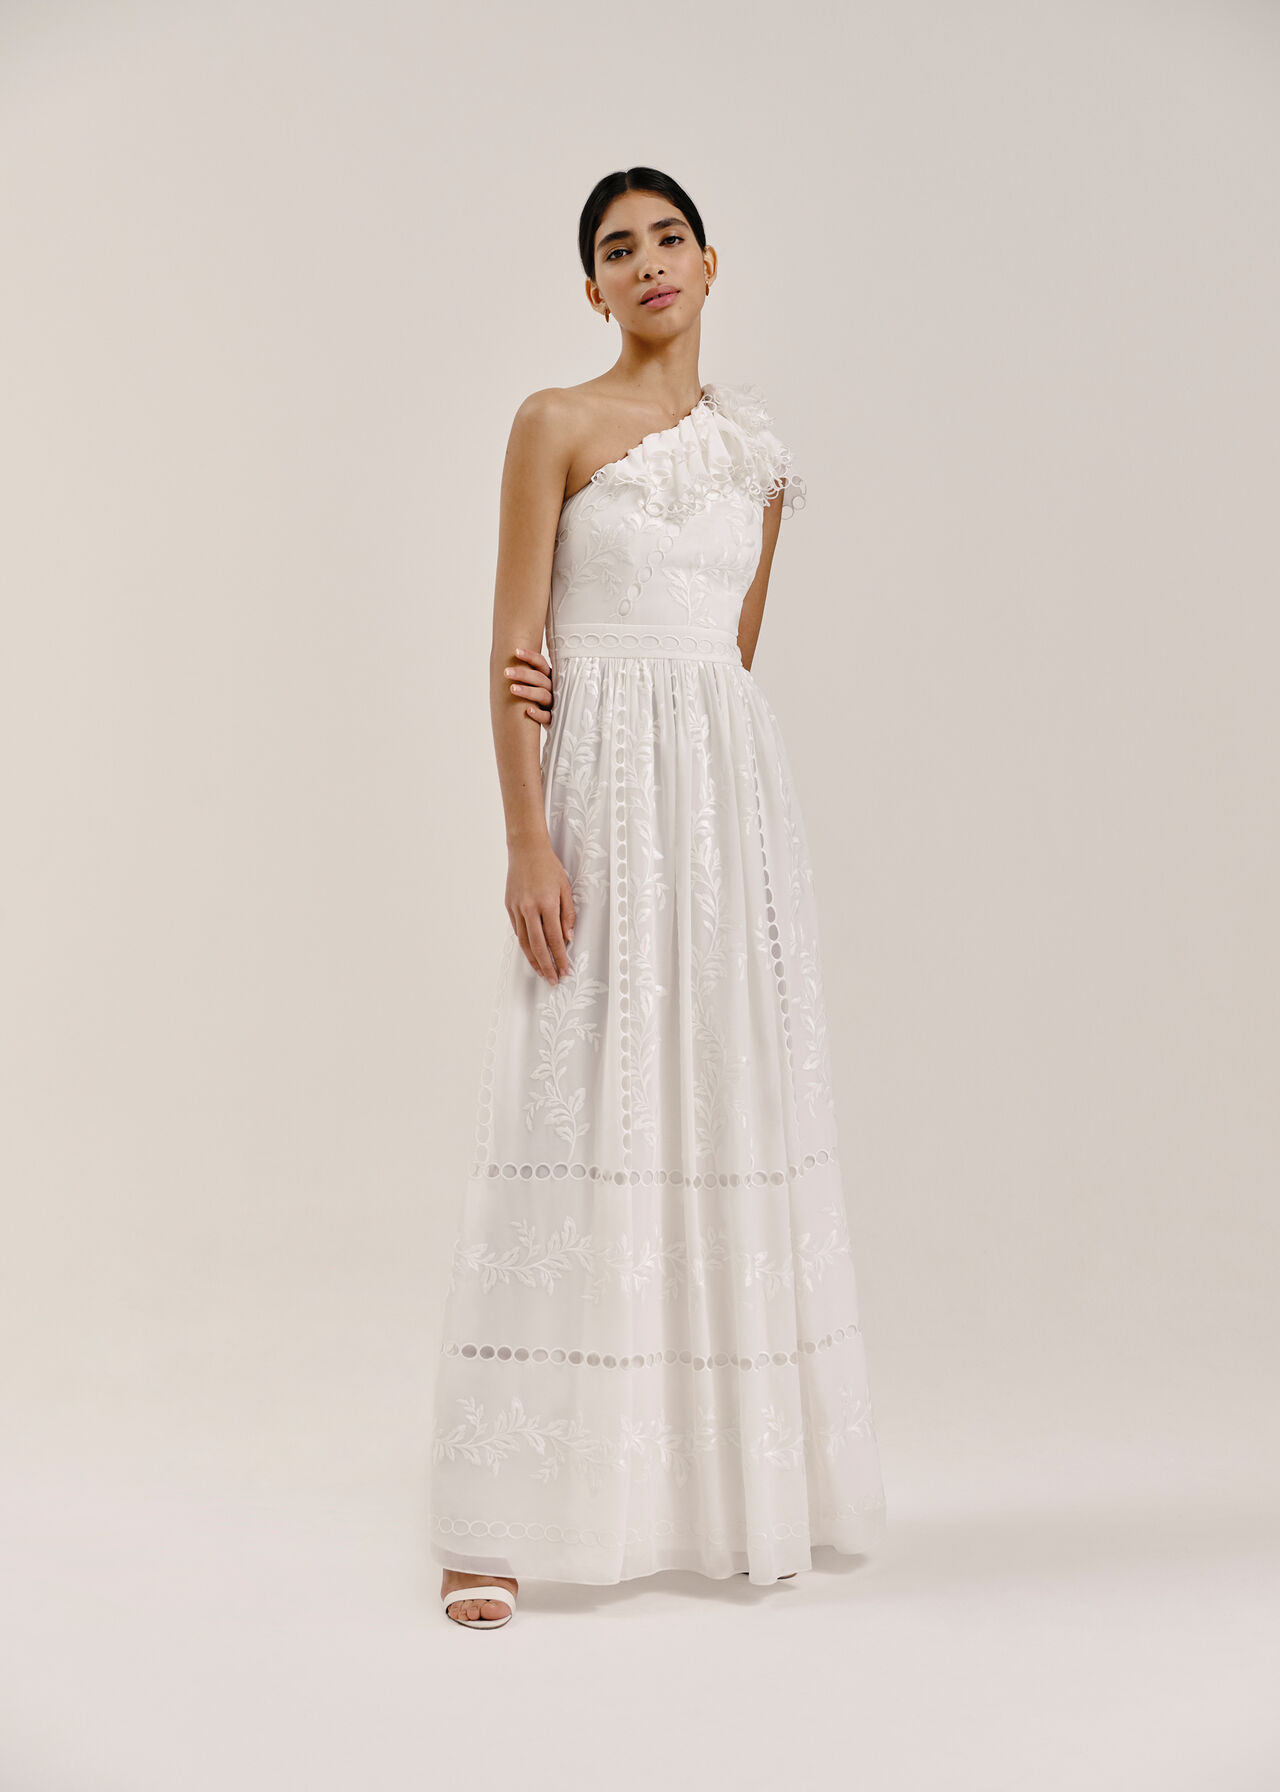 Adelaide Wedding Dress Ivory/Multi